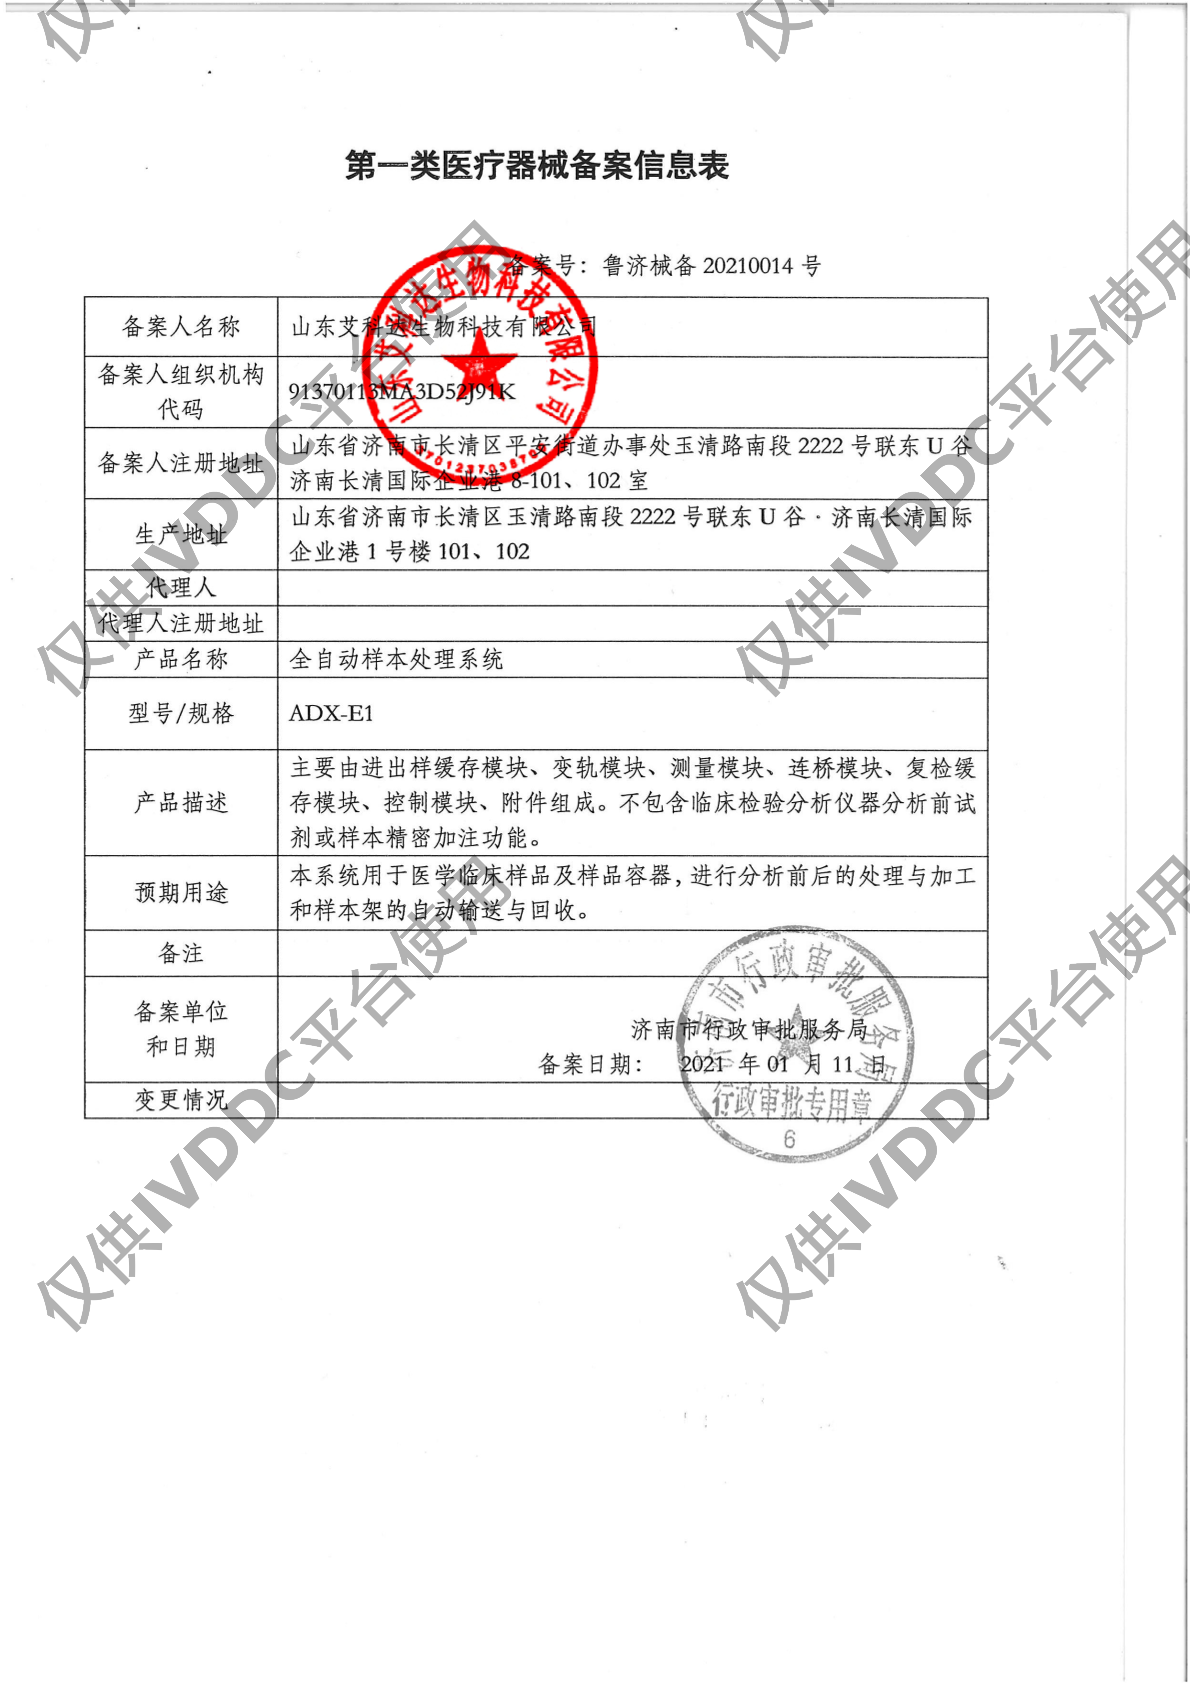 【山东艾科达】 全自动样本处理系统 ADX-E1注册证